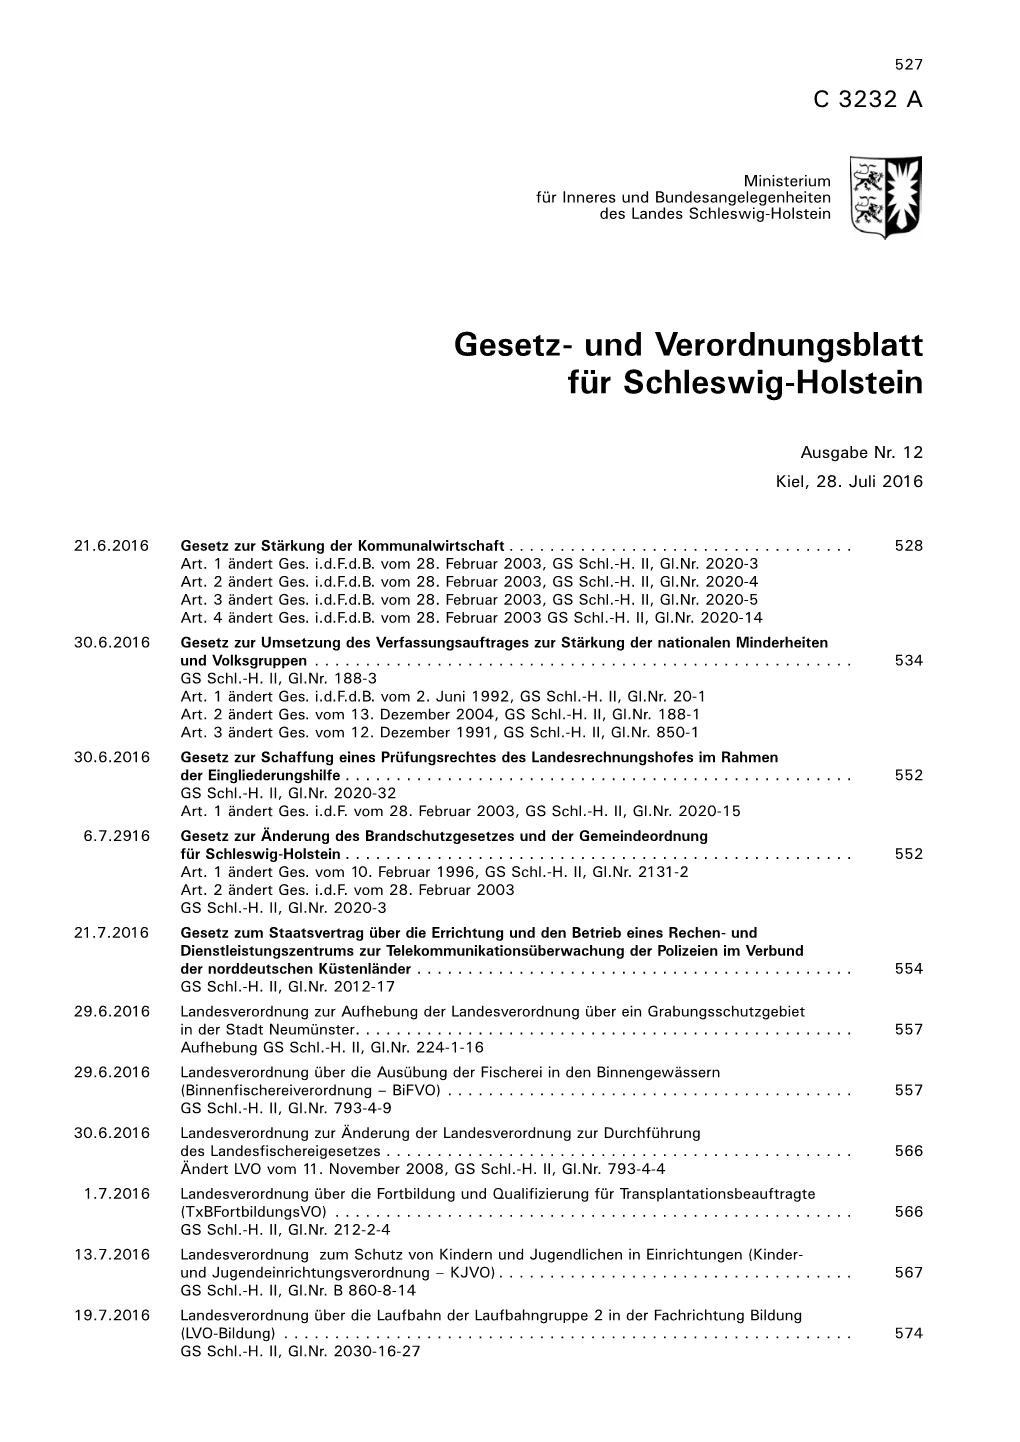 Gesetz- Und Verordnungsblatt Für Schleswig-Holstein